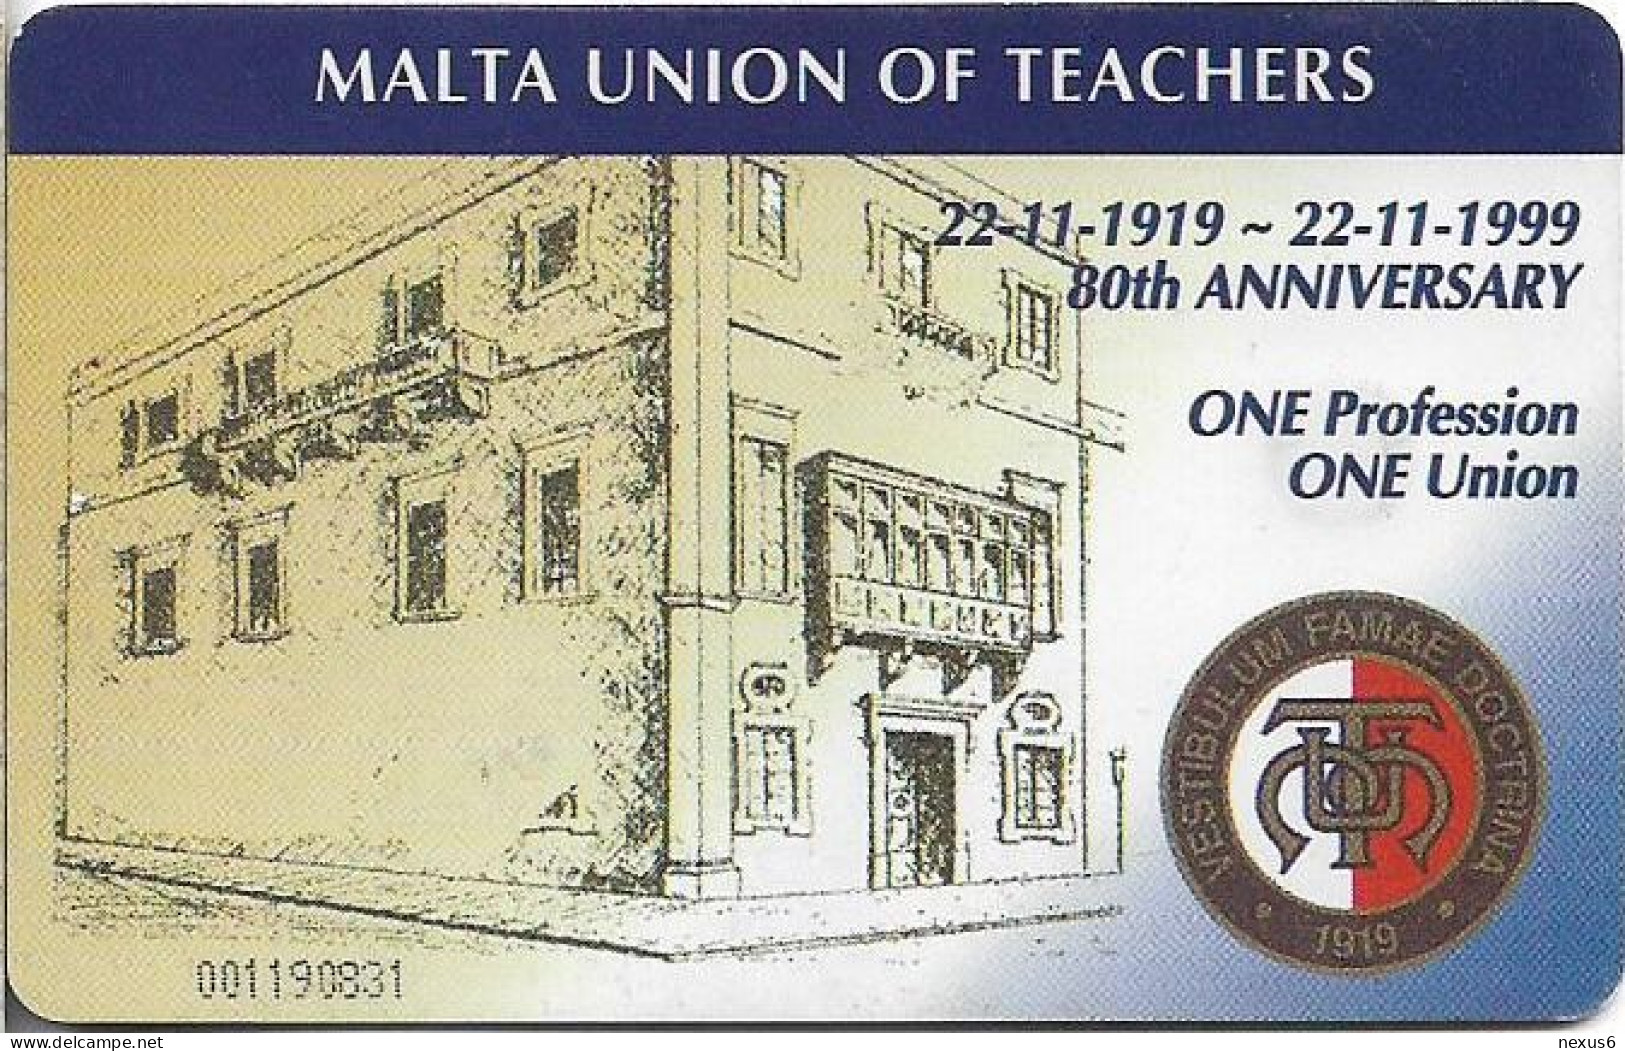 Malta - Maltacom - Antonio Galea MUT Founder, 12.1999, 40U, 10.000ex, Used - Malte